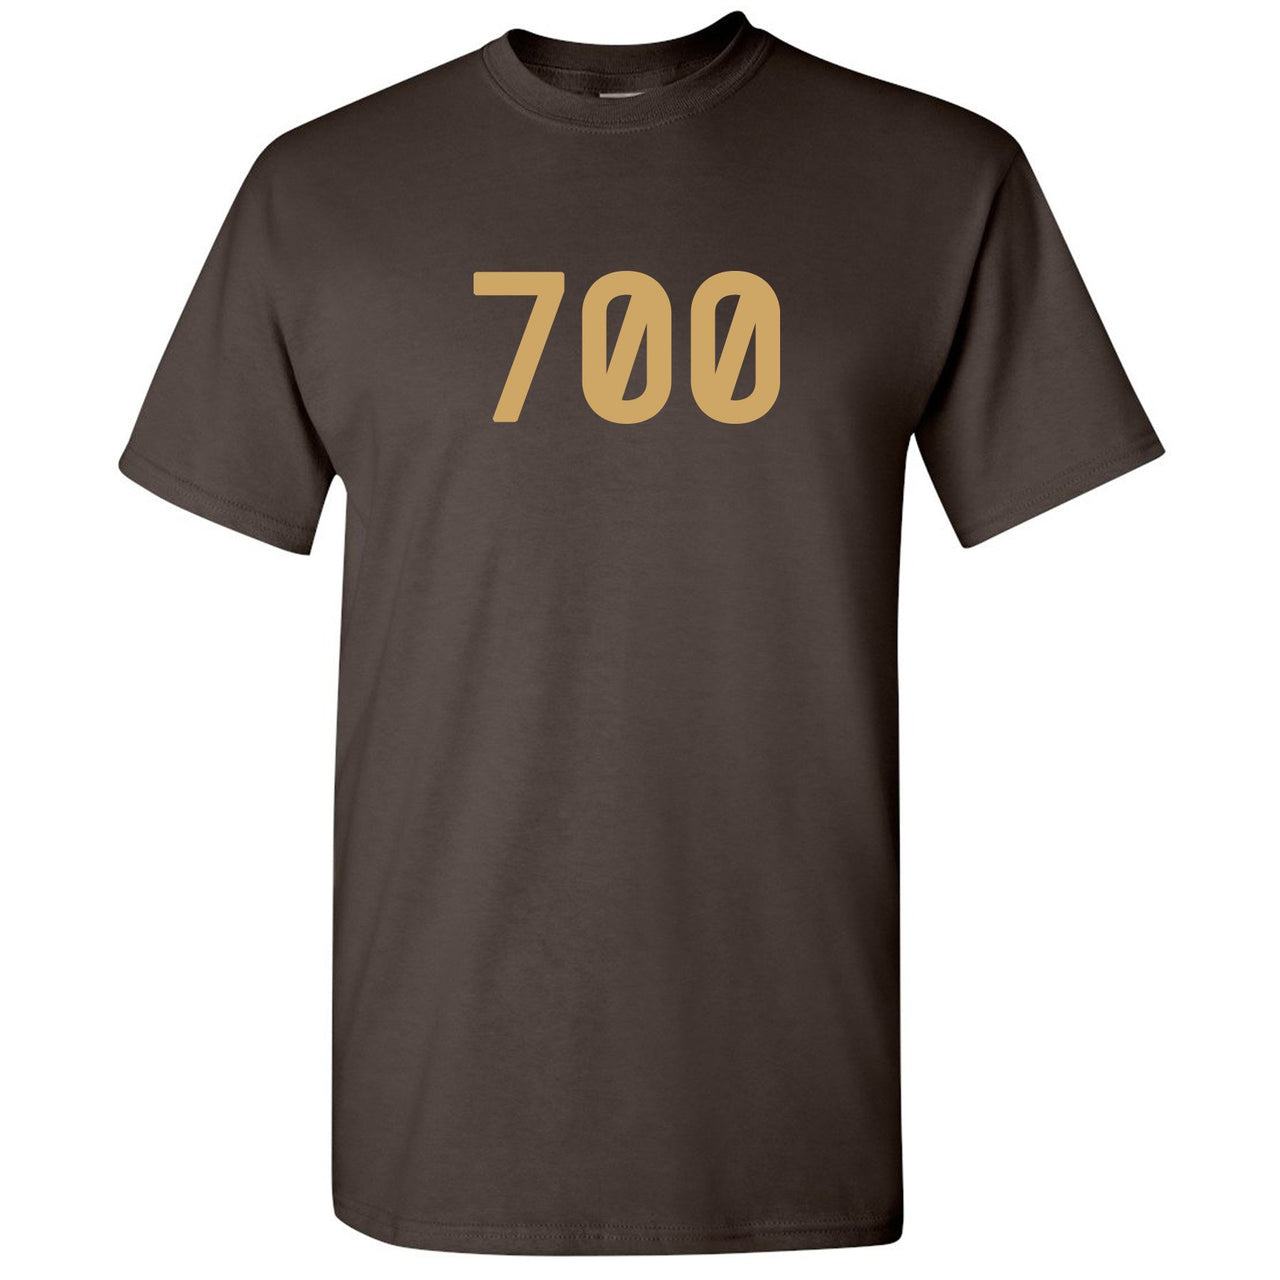 Geode 700s T Shirt | 700, Dark Chocolate